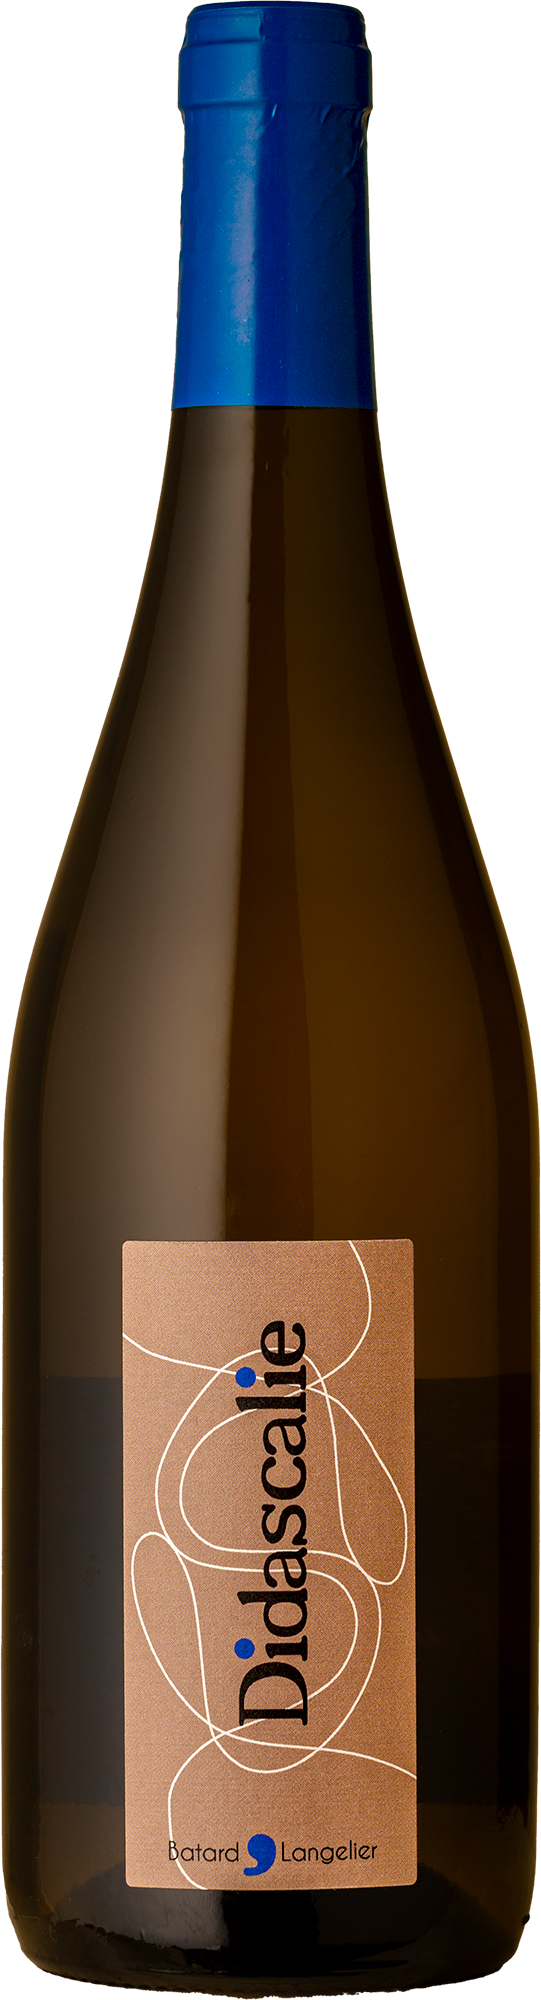 Batard Langelier - Muscadet sur Lie “Didascalie” Melon Blanc 2020 White Wine